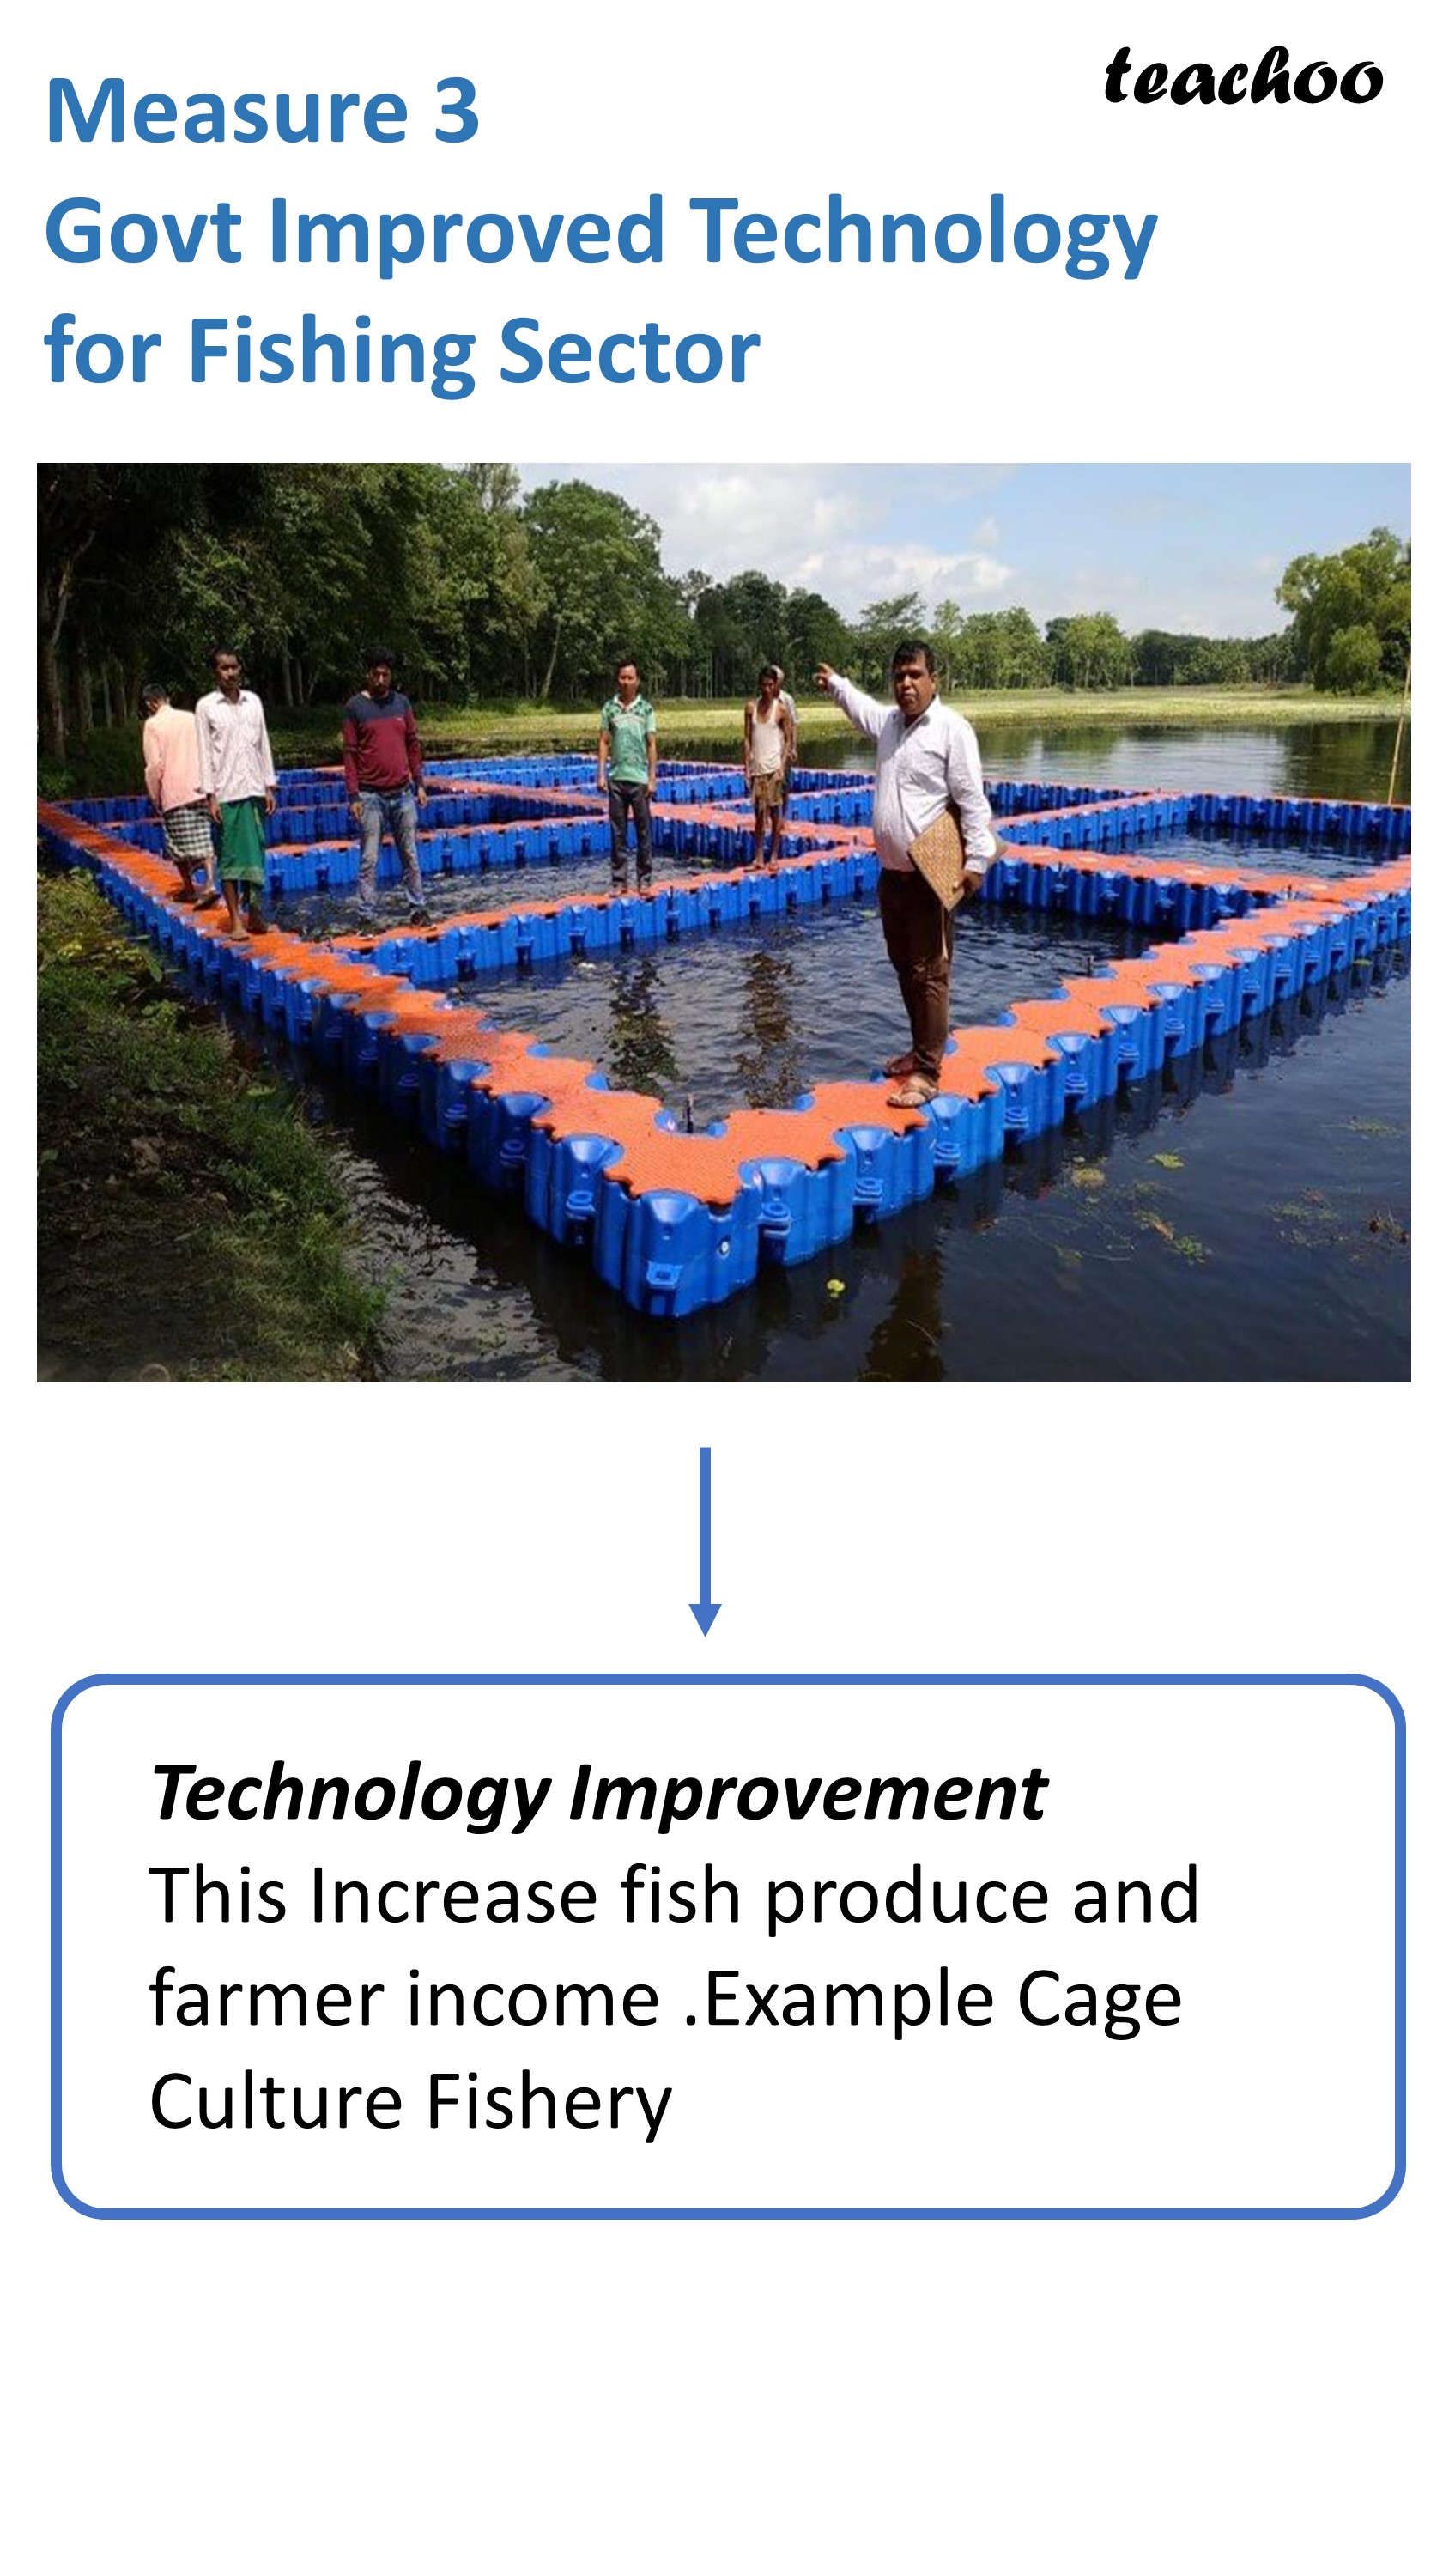 Measure 3 Govt Improved Technology for Fishing Sector - Teachoo.JPG